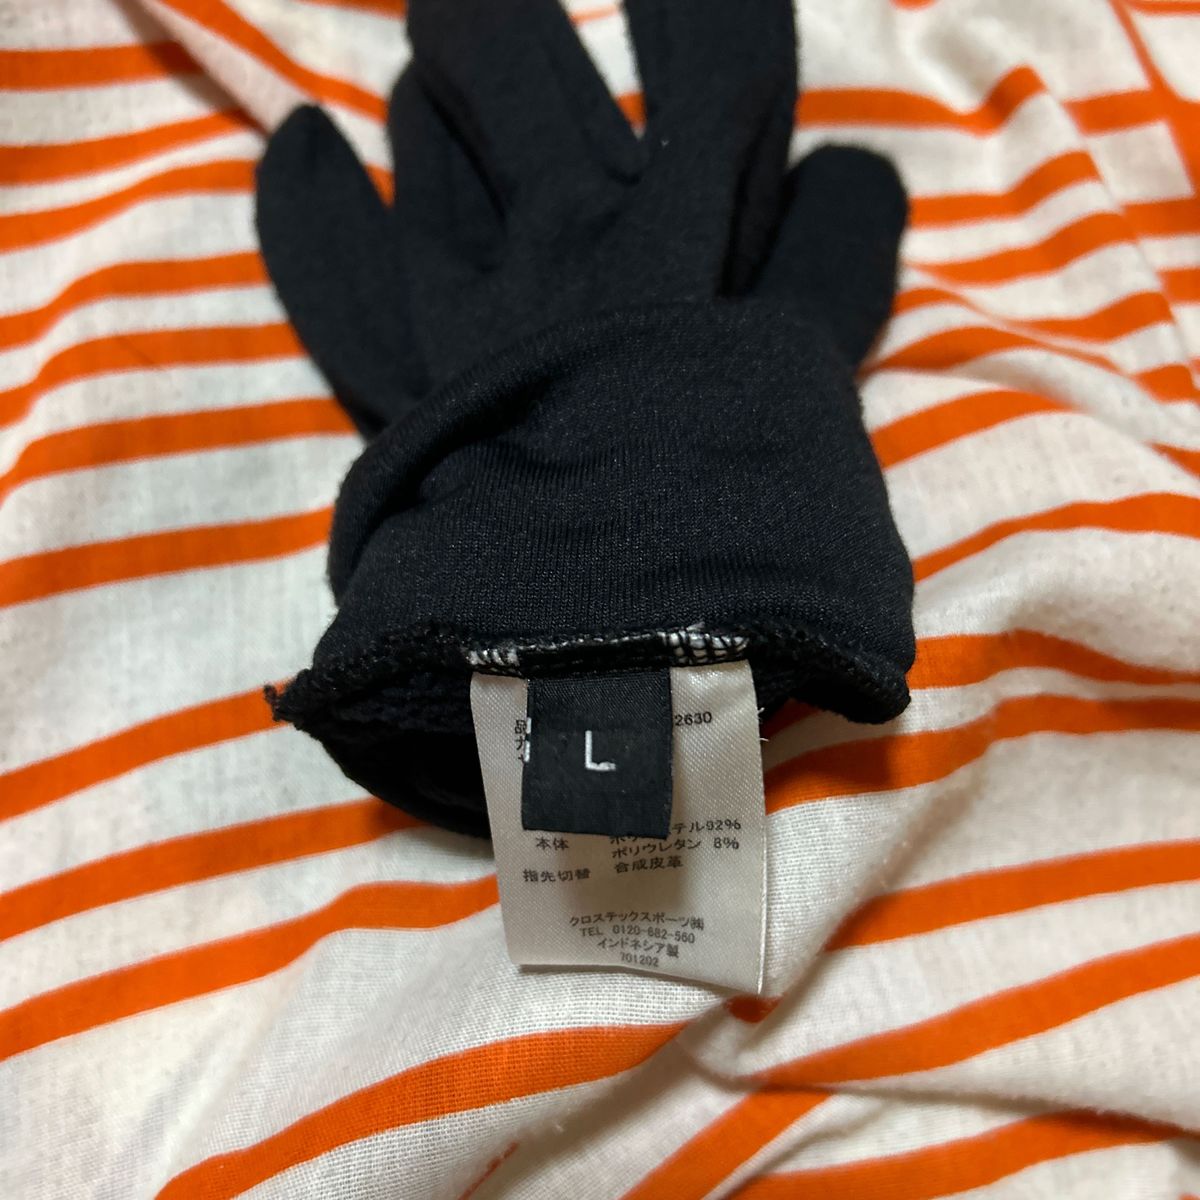 ゼビオで買った手袋で（左手だけ）誰か無くした人用に売ります。サイズはLです。